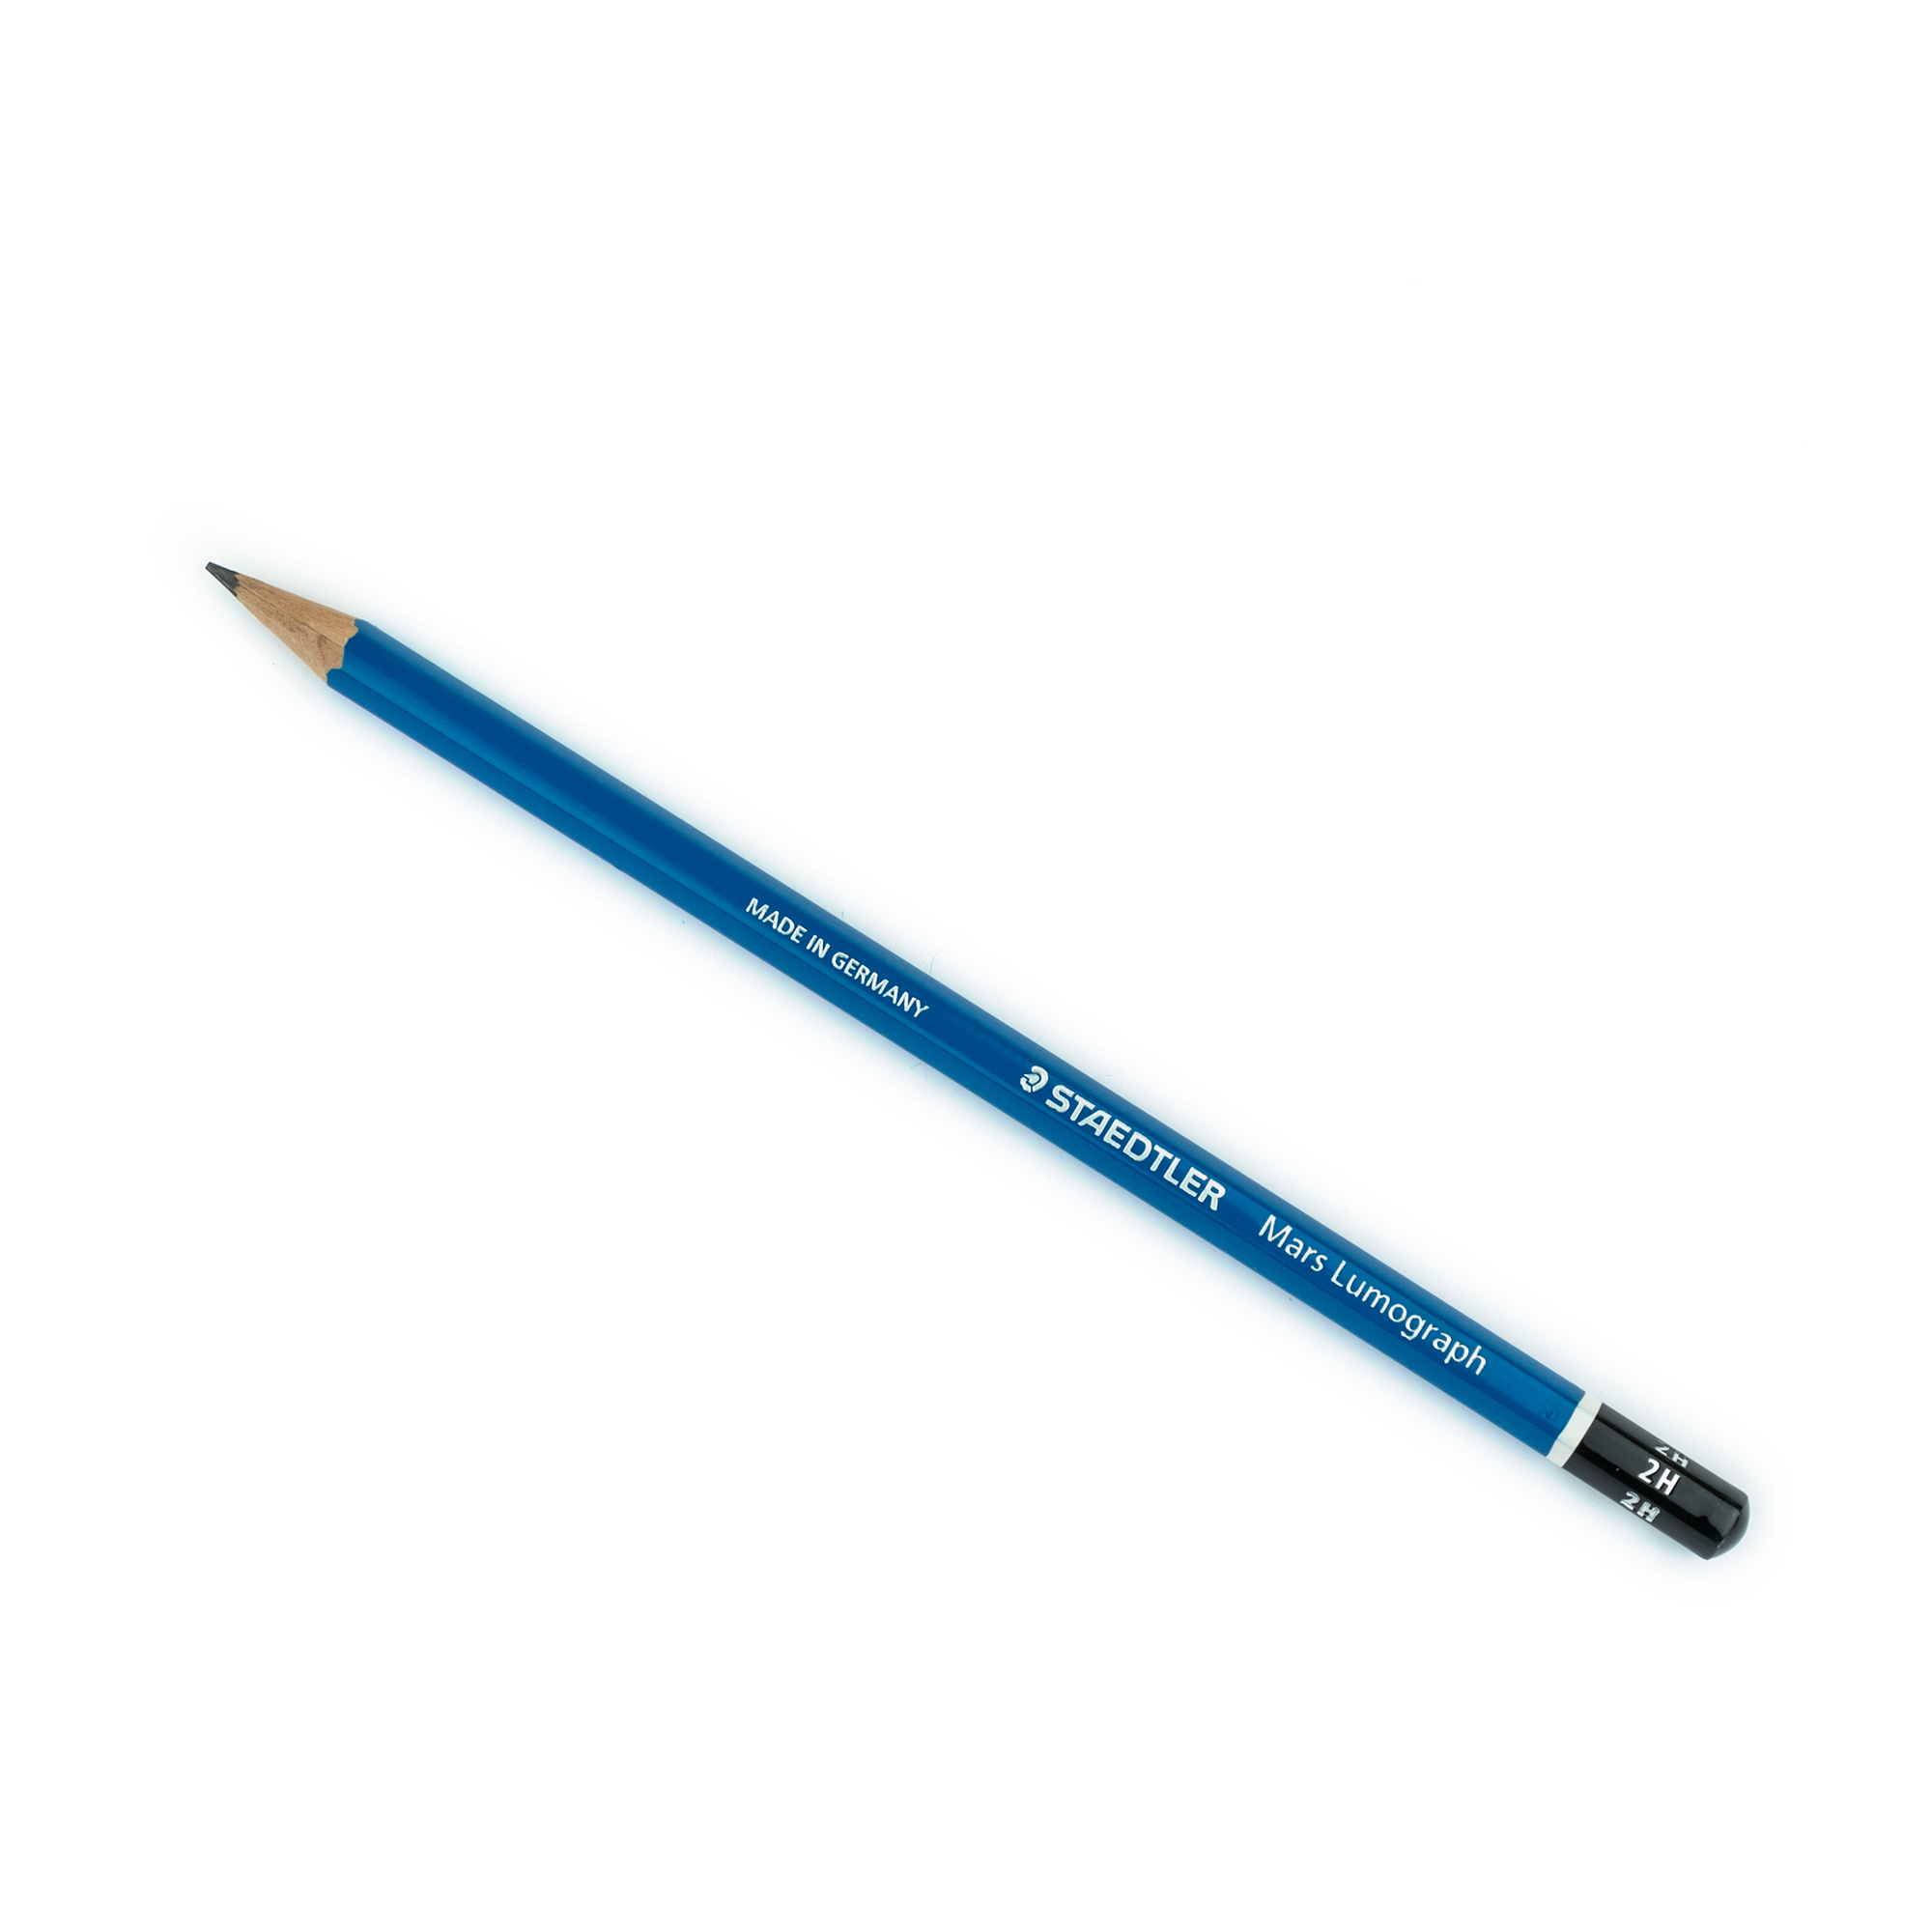 2 h pencil